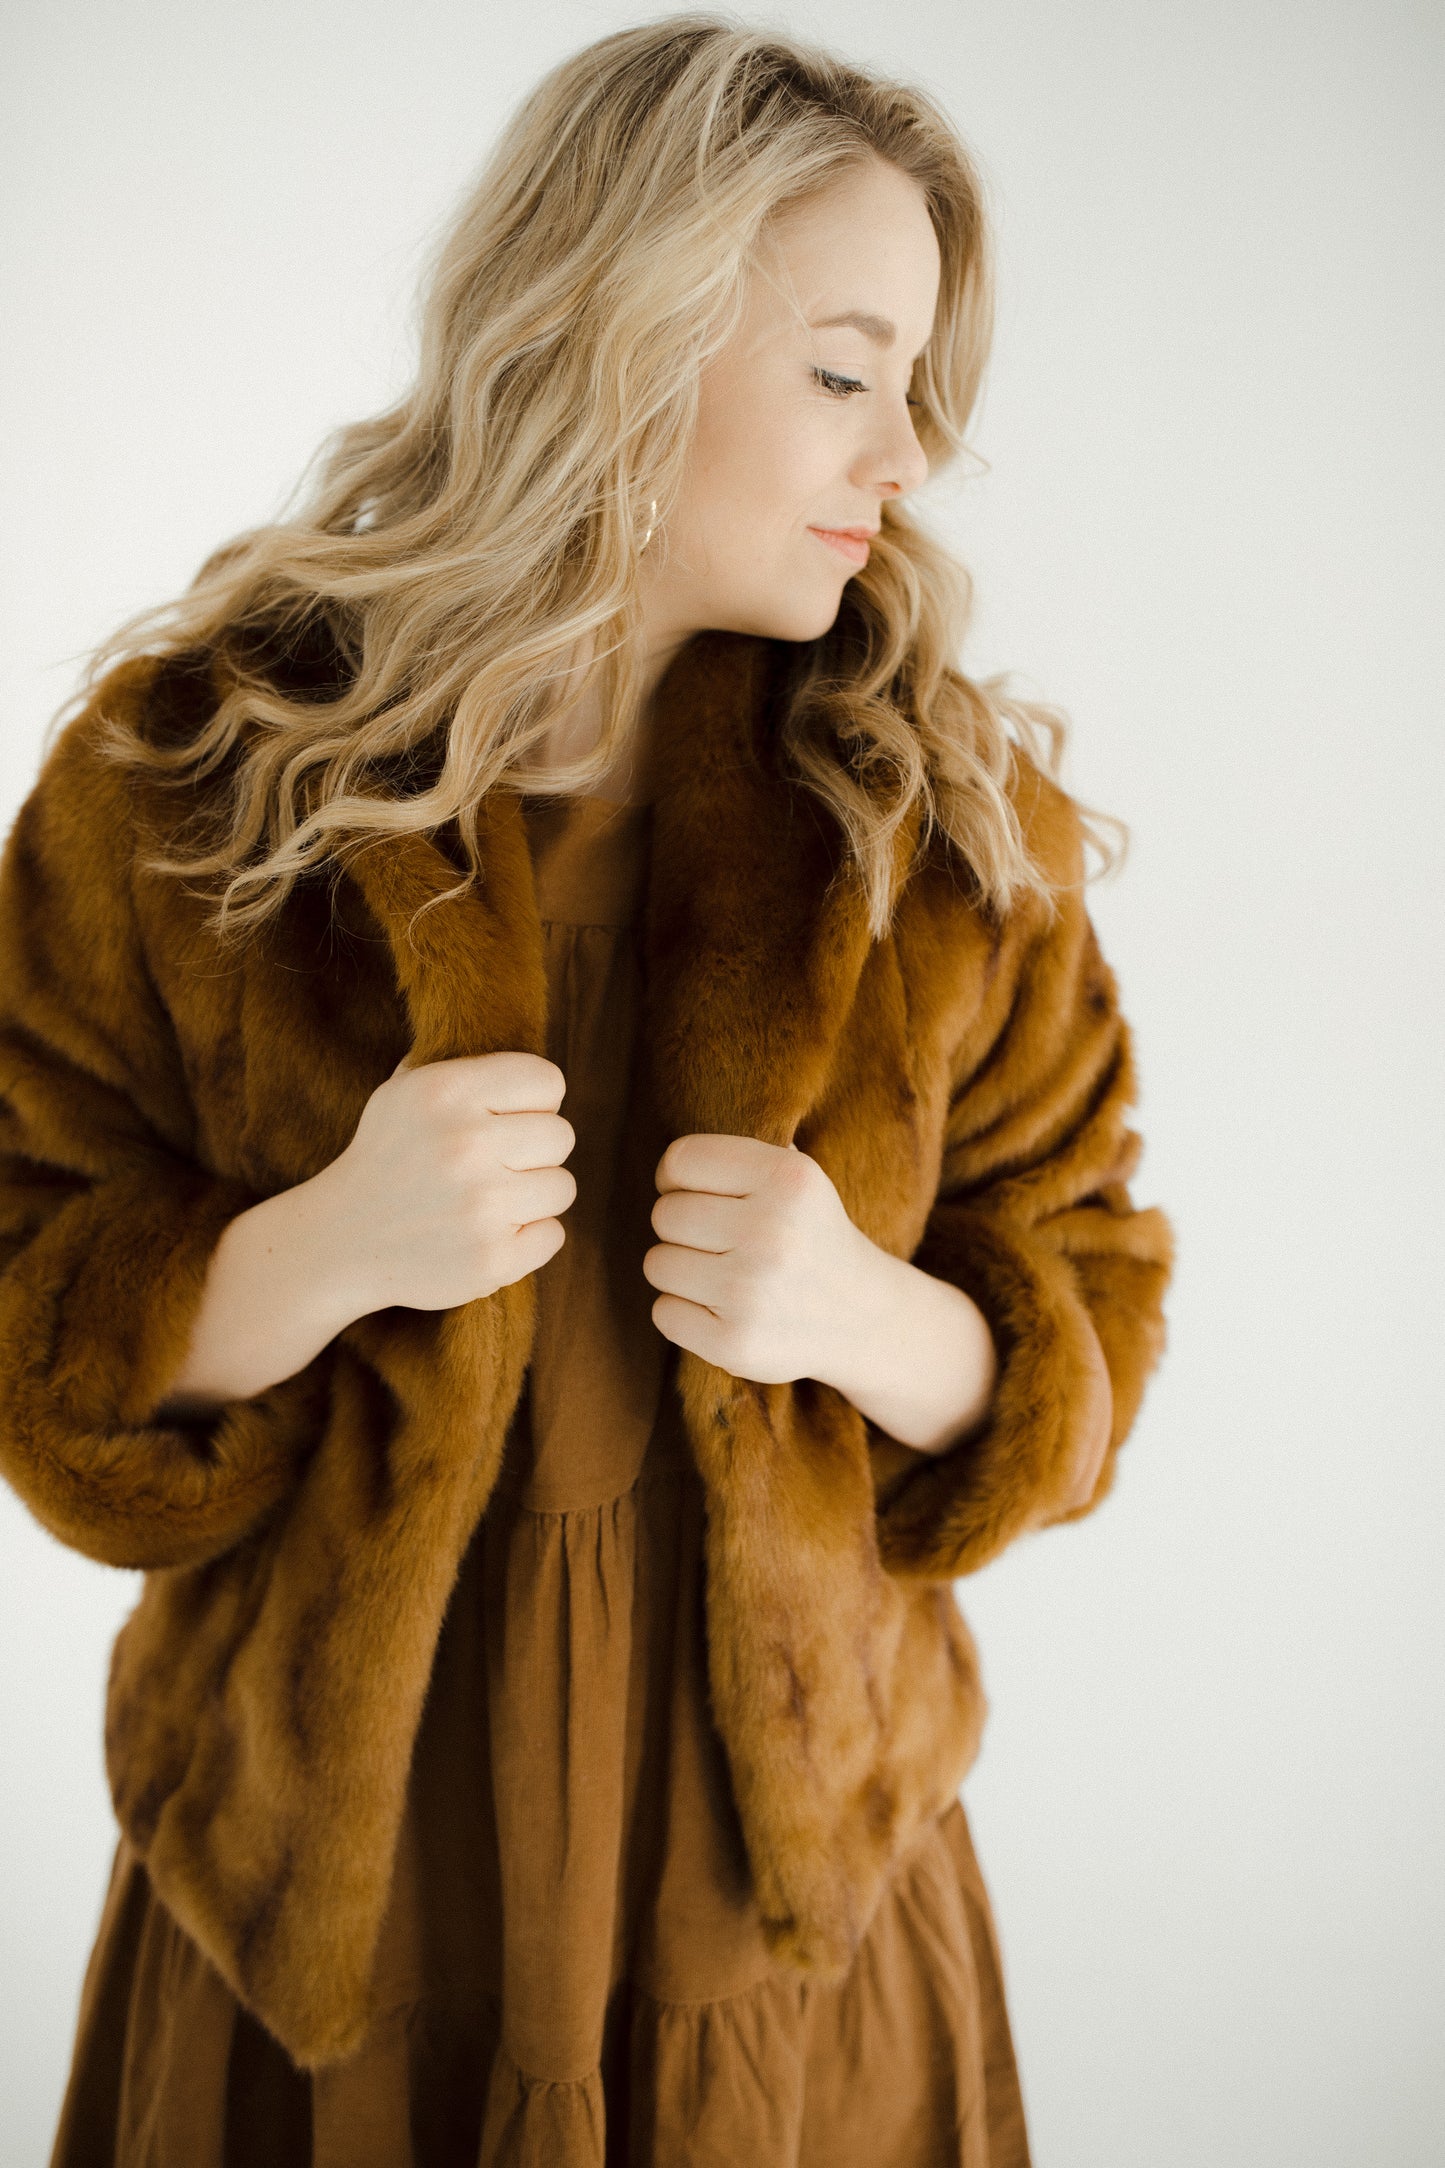 The Neutral Toned Fur Coat